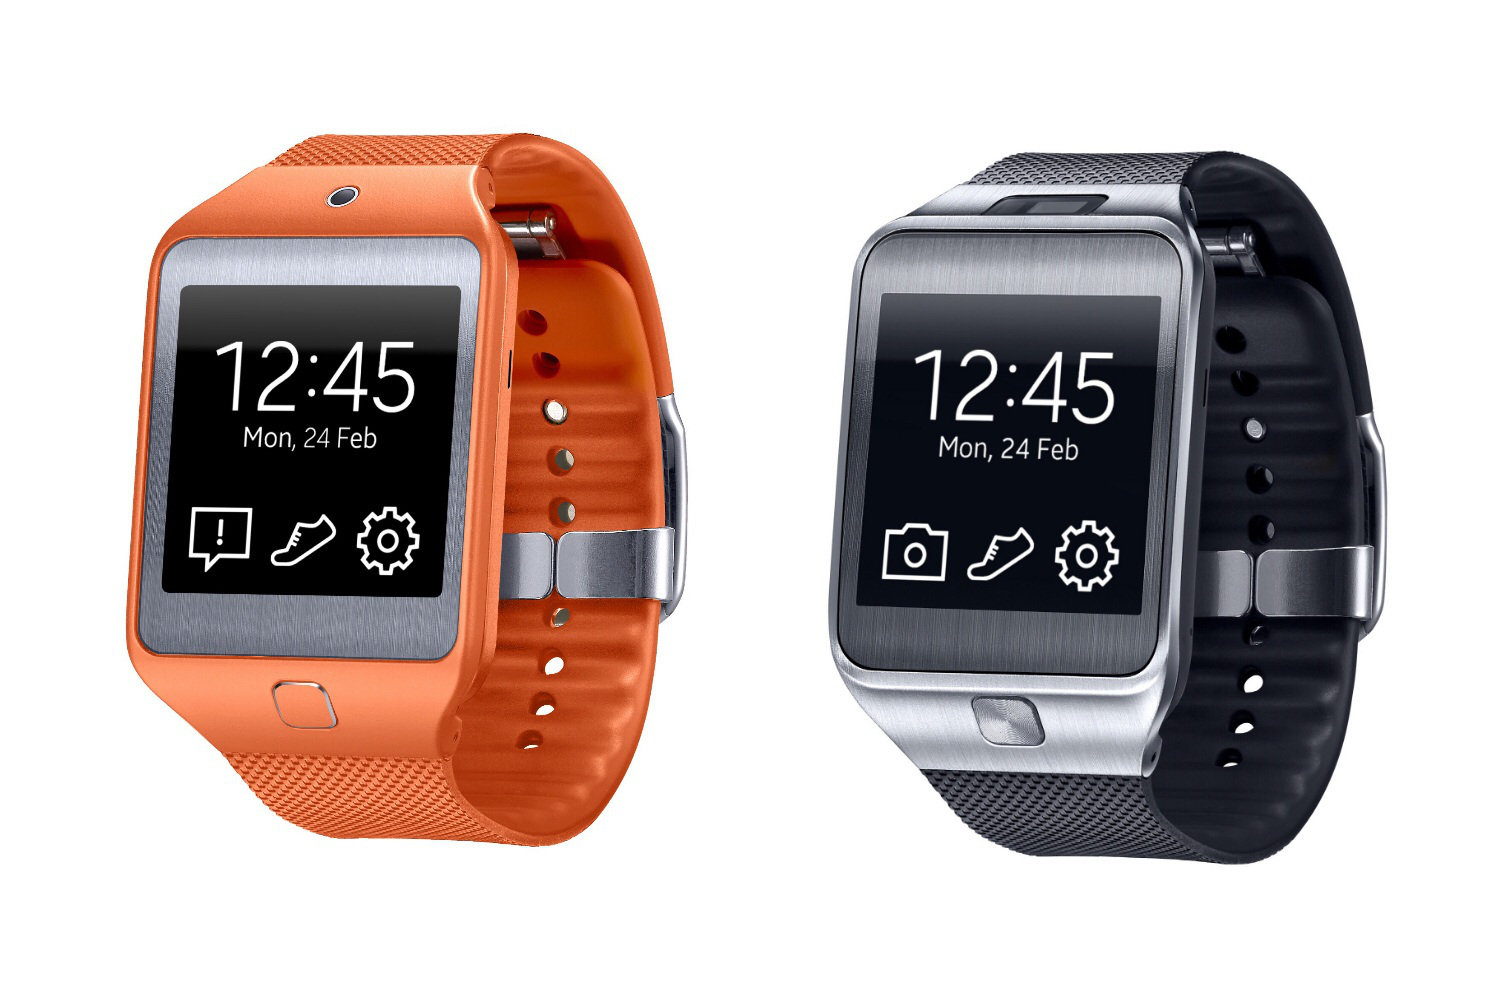 plakboek Blijkbaar Schaar Smartwatches: Samsung's Galaxy Gear 2 Watch Drops Android for Tizen | Time